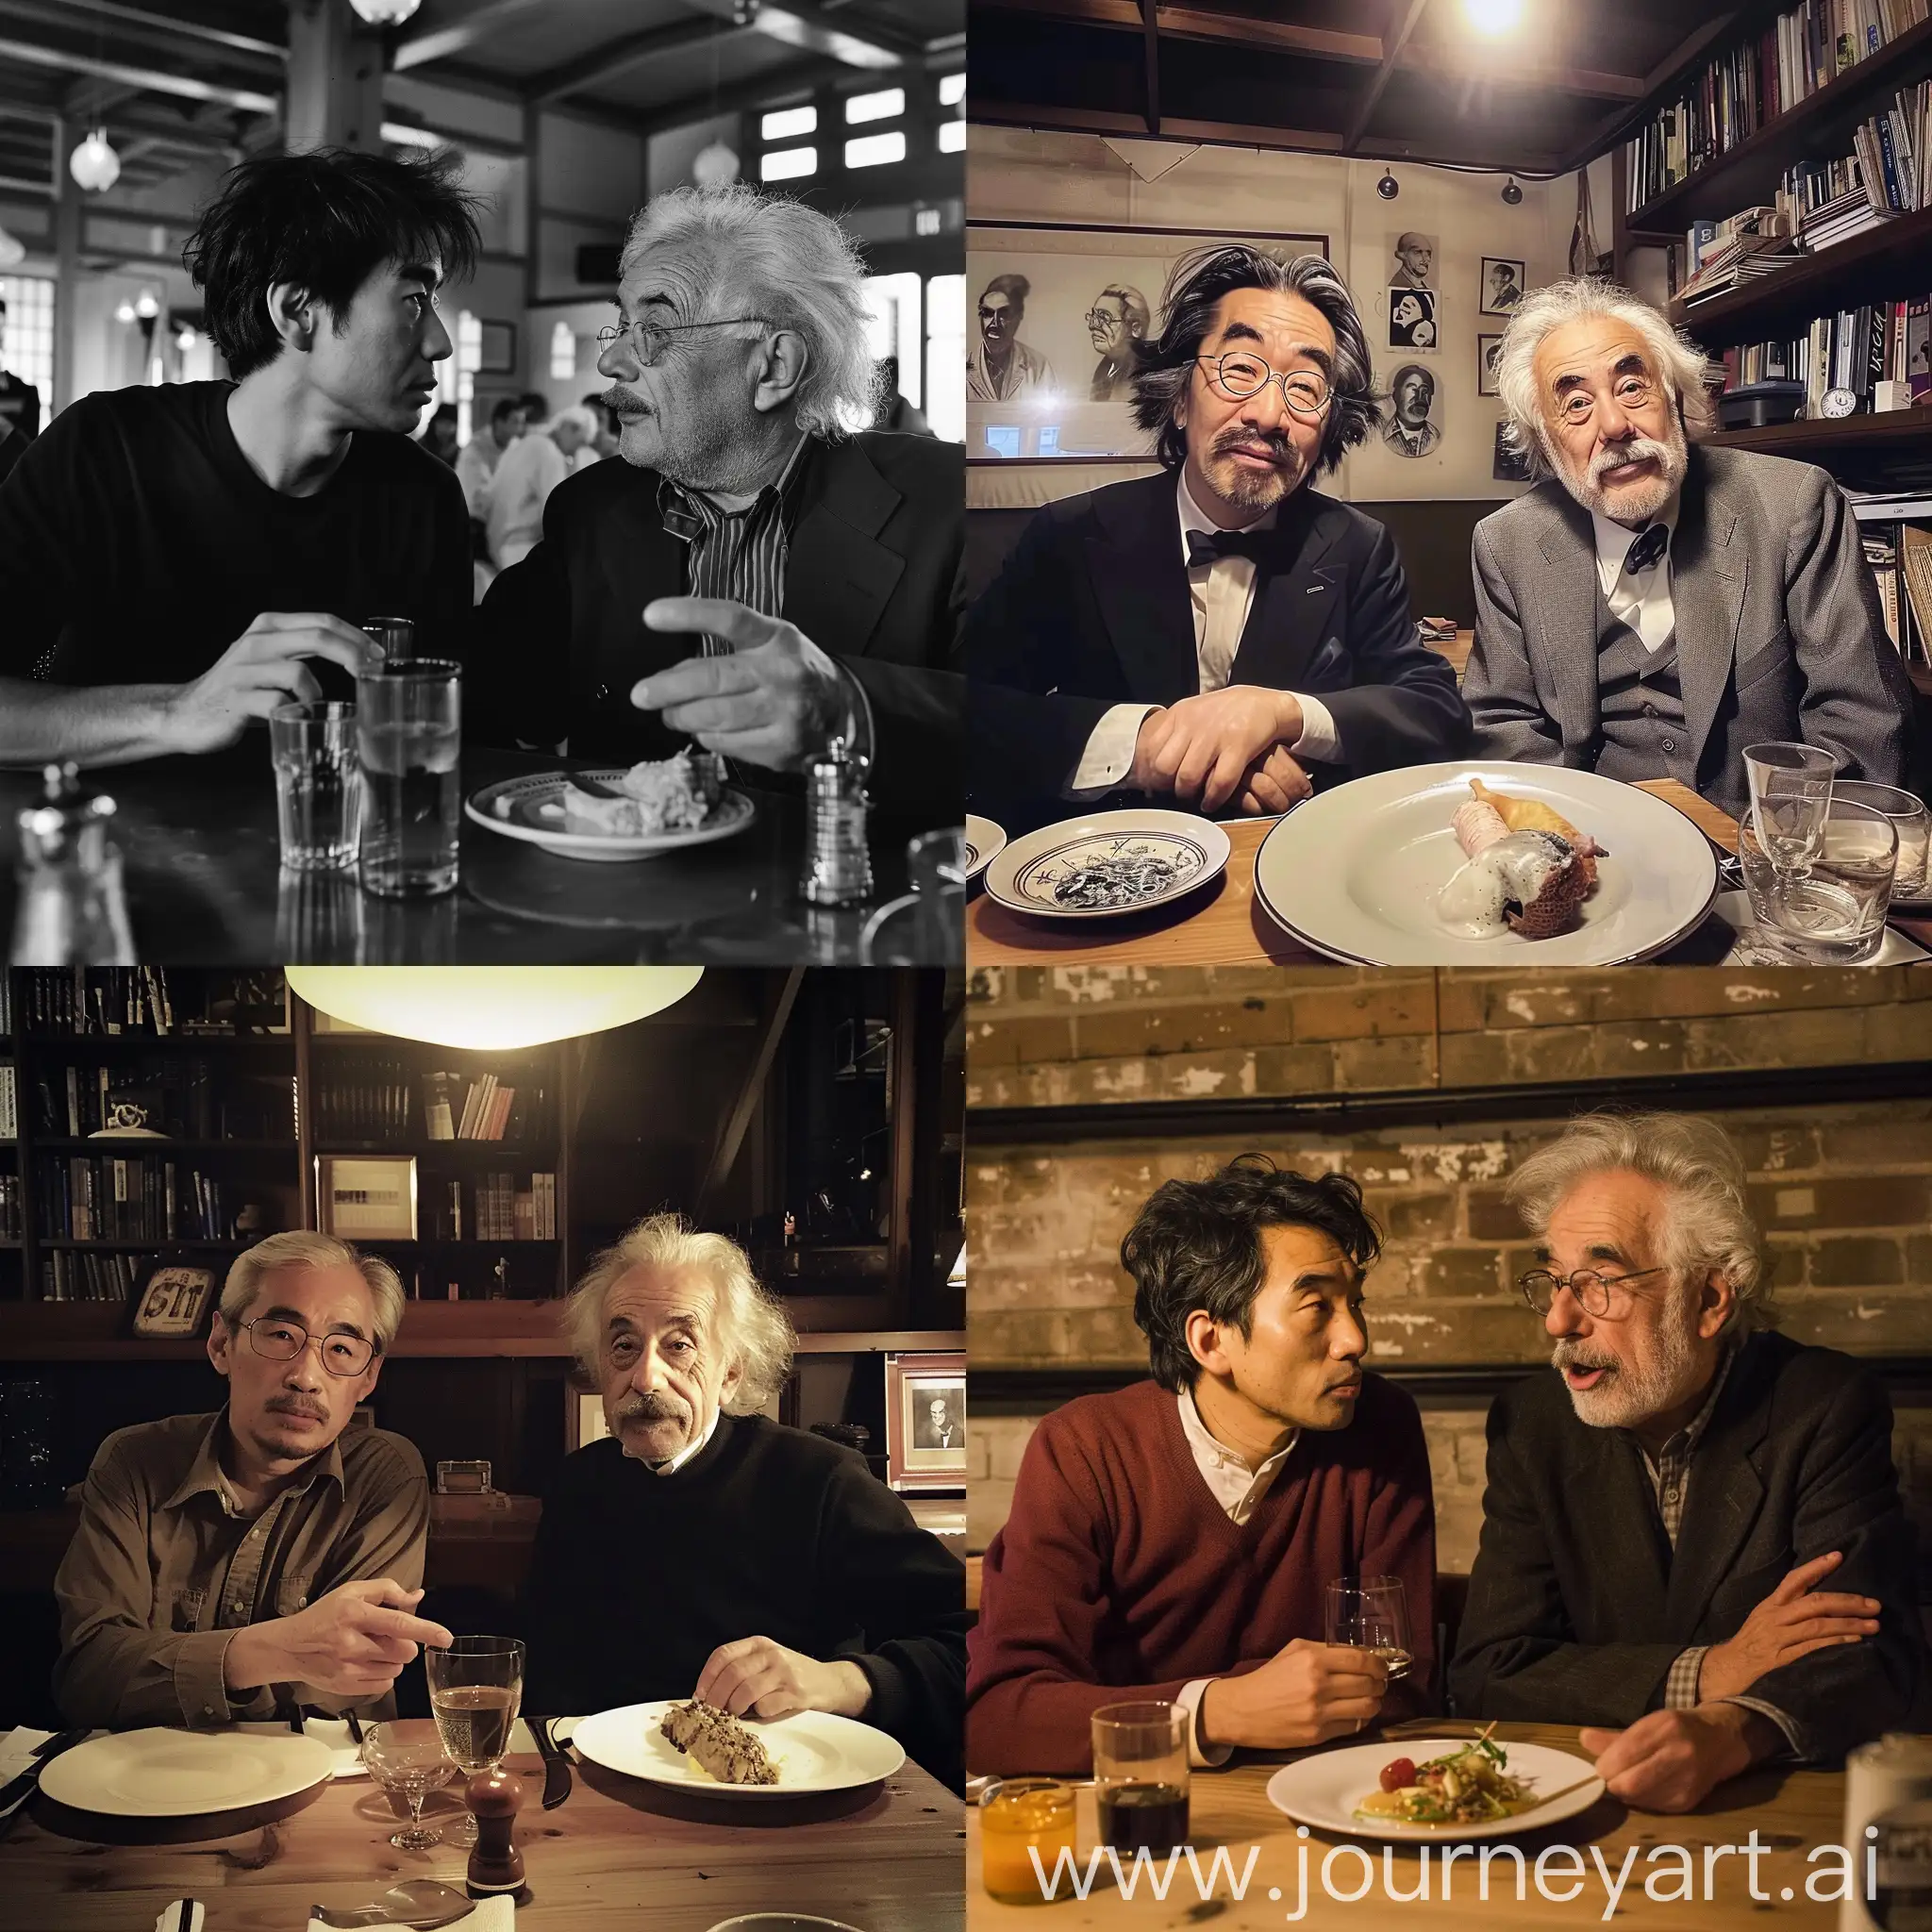 Haruki-Murakami-and-Einstein-Enjoying-Dinner-Conversation